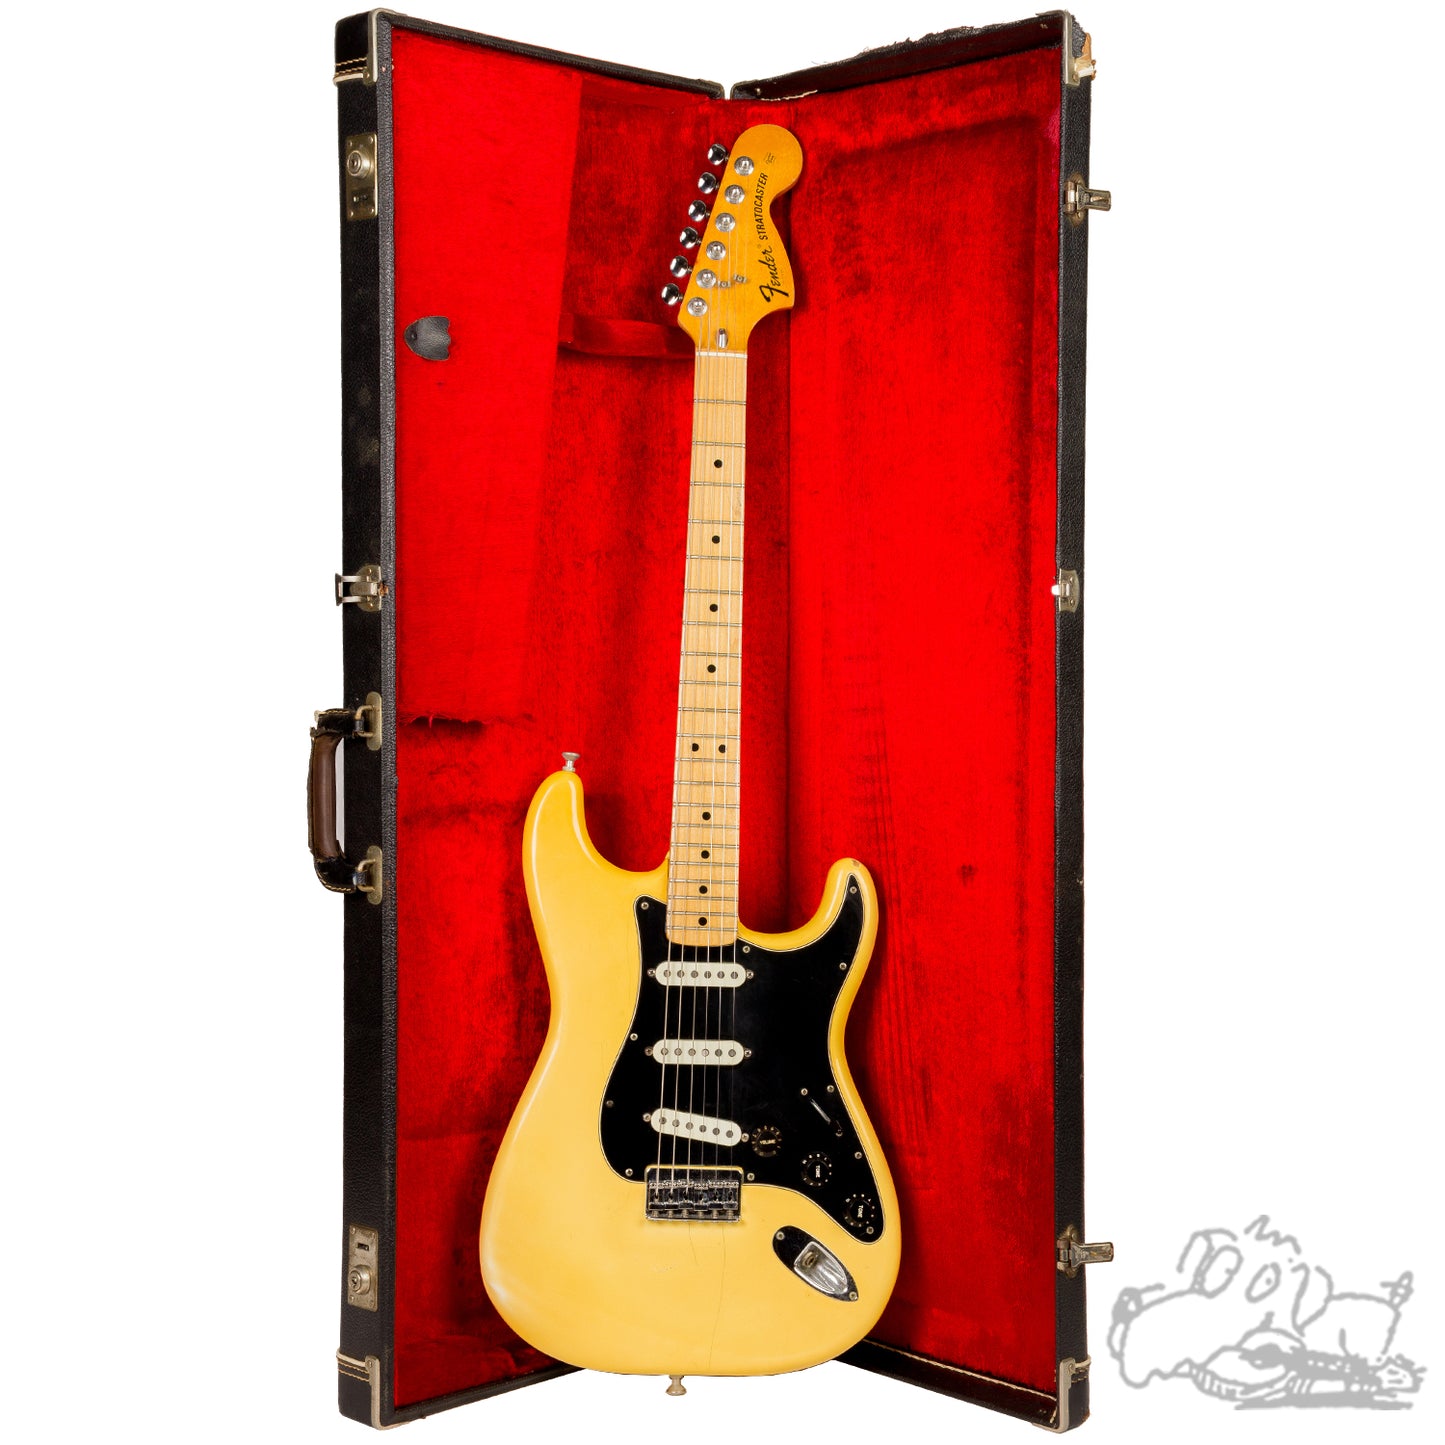 1975 Fender Stratocaster - Hardtail